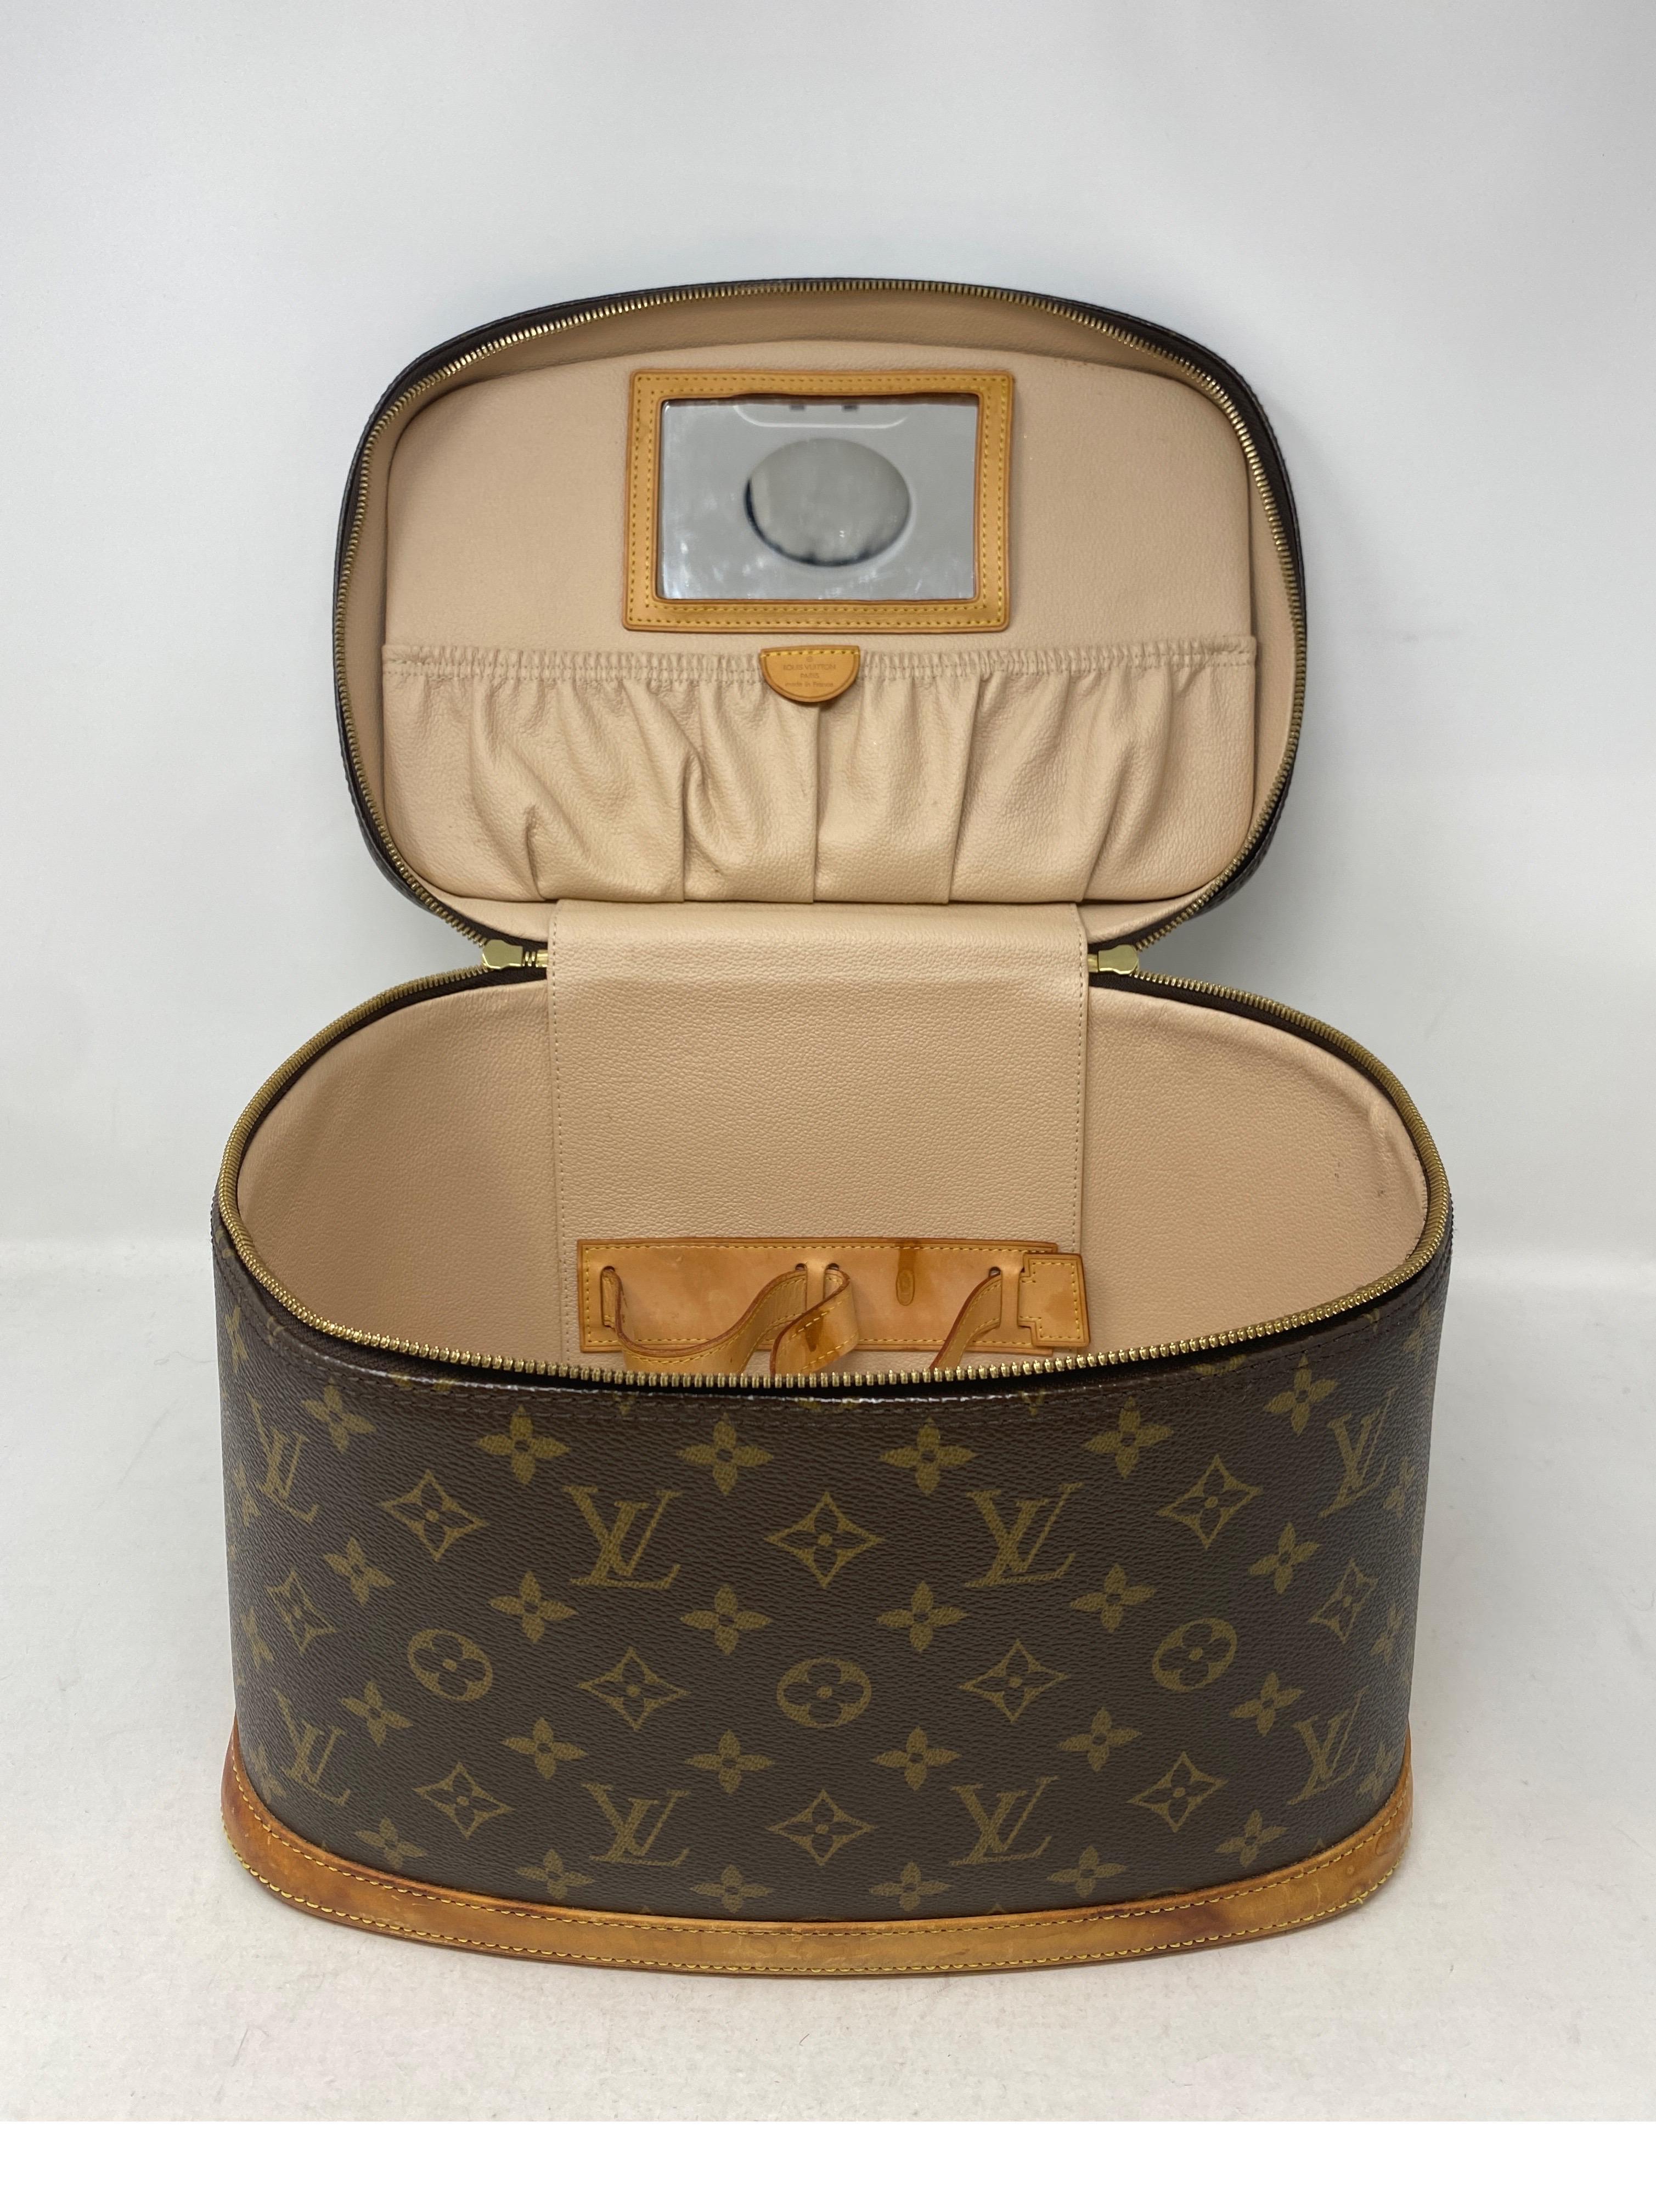 Die Kosmetiktasche von Louis Vuitton  für Damen oder Herren